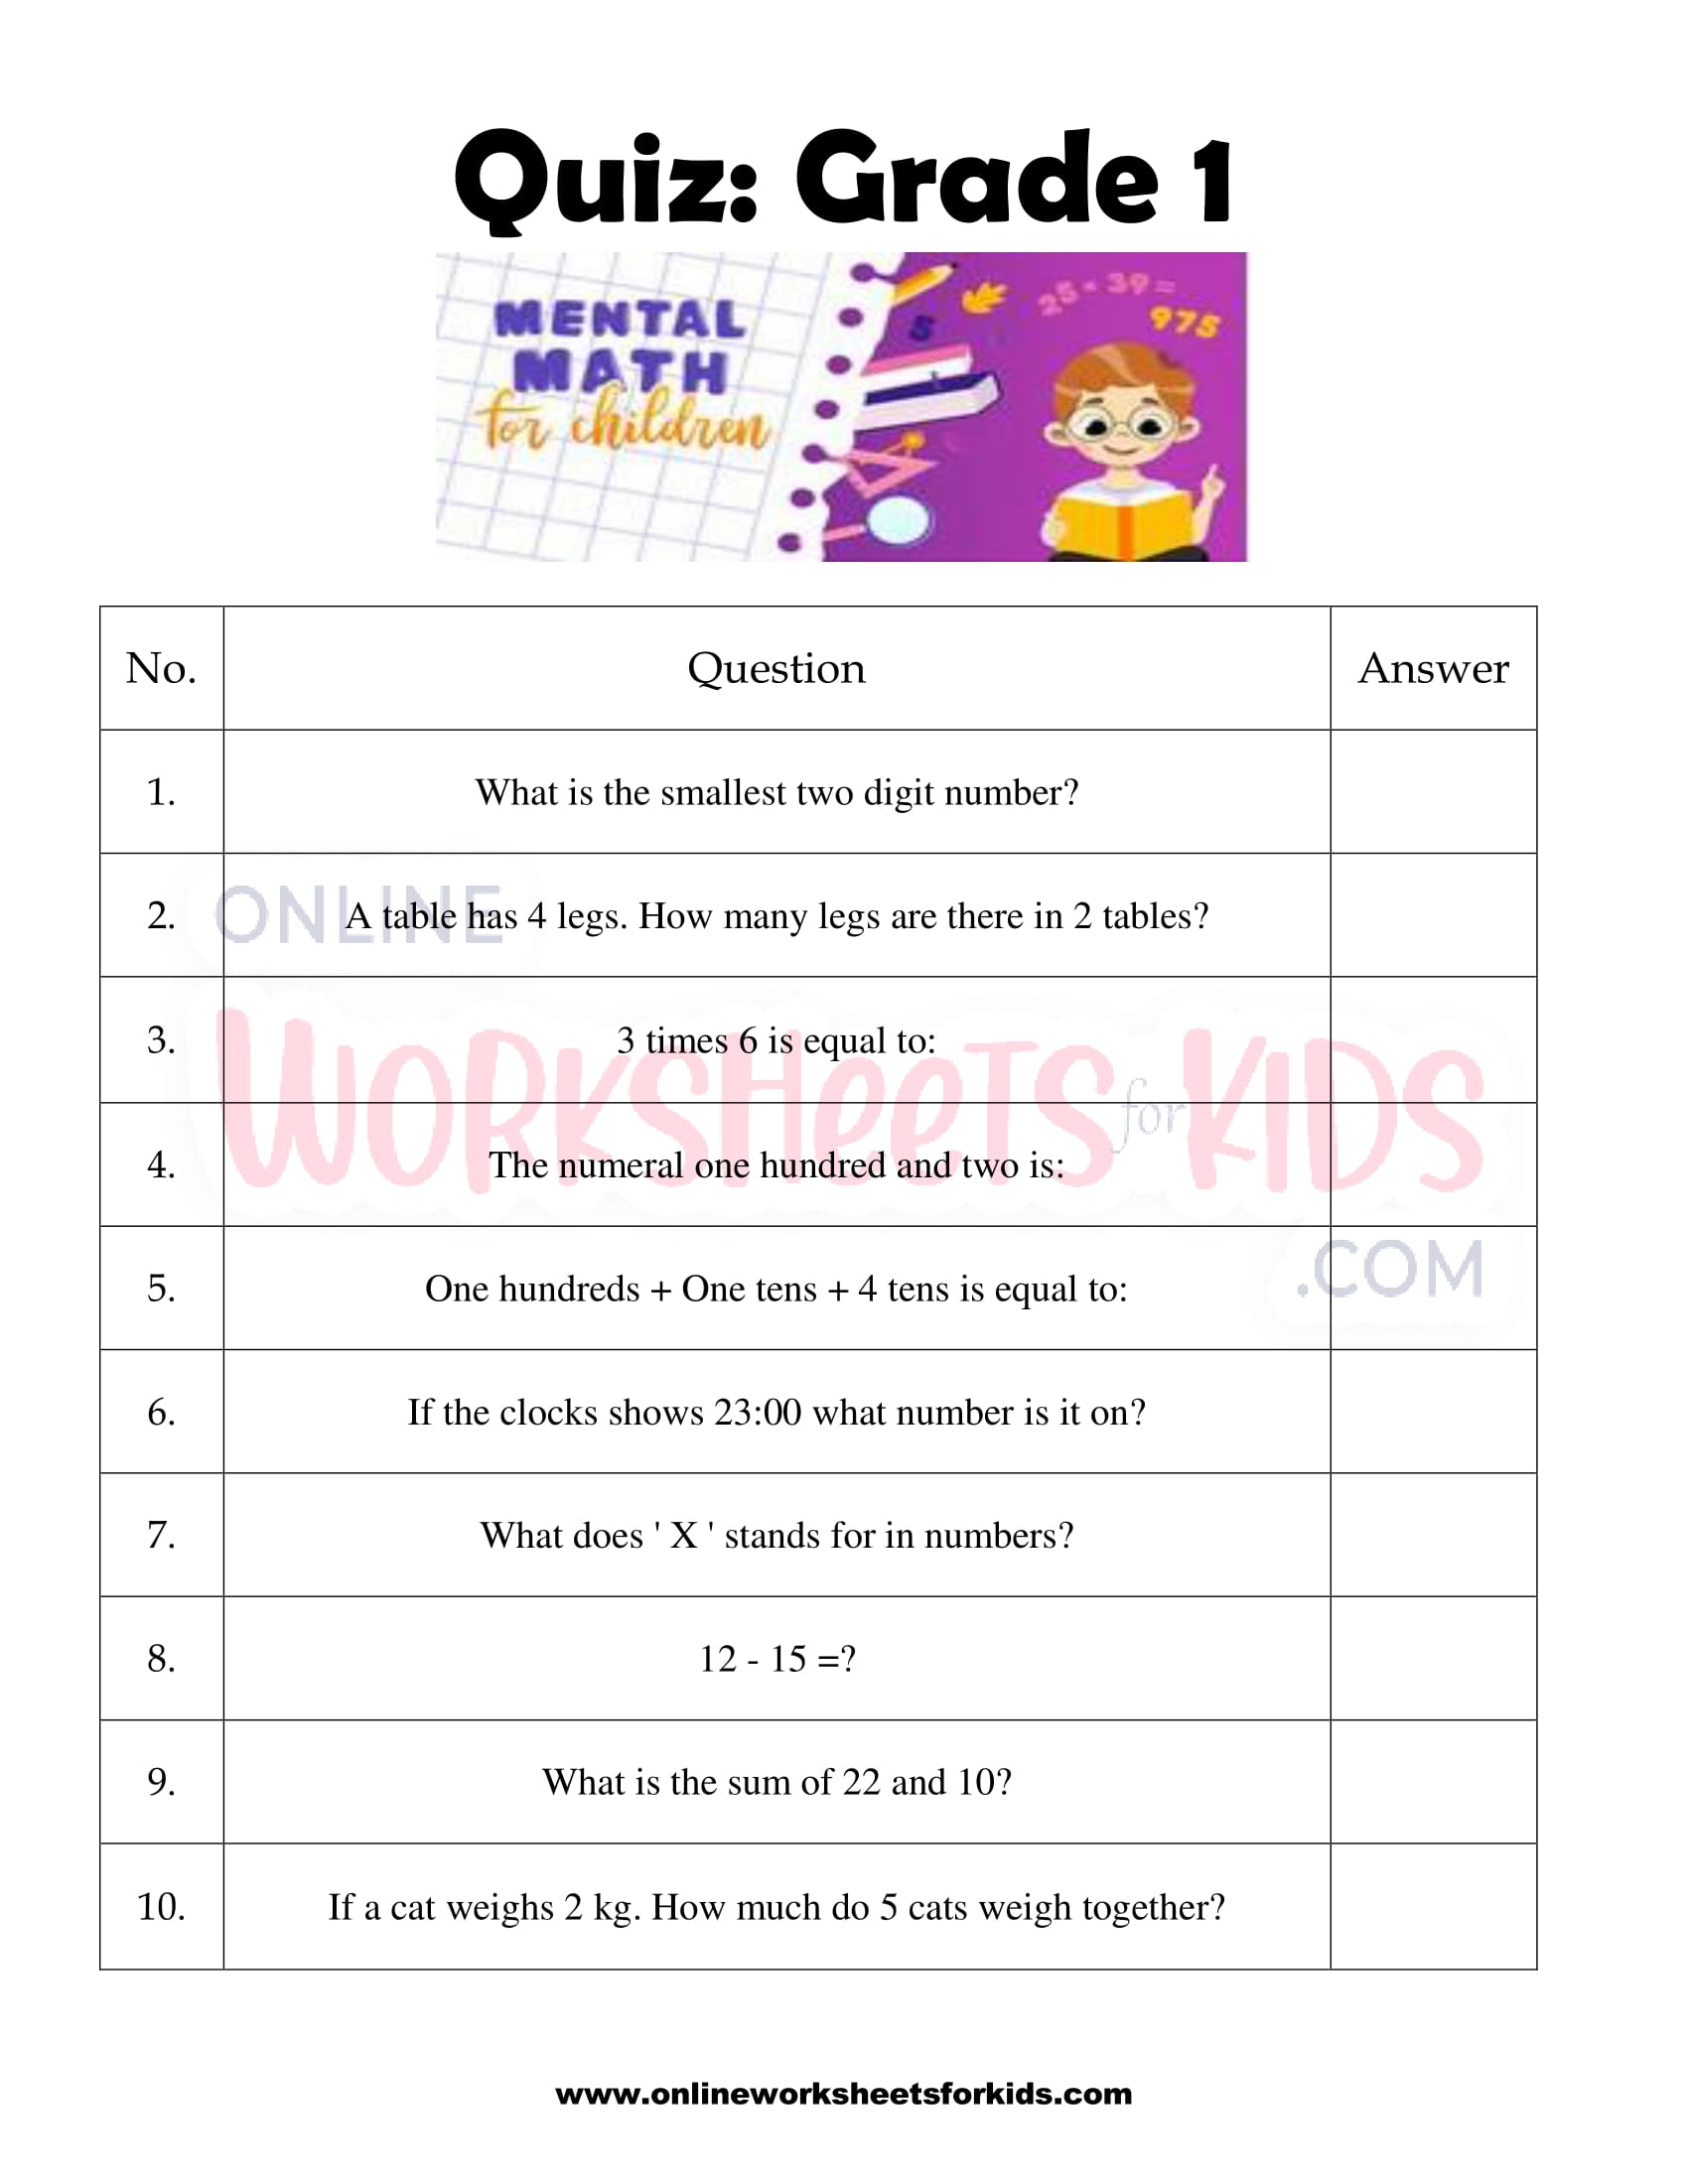 Mental Maths Worksheets For Grade 1 10